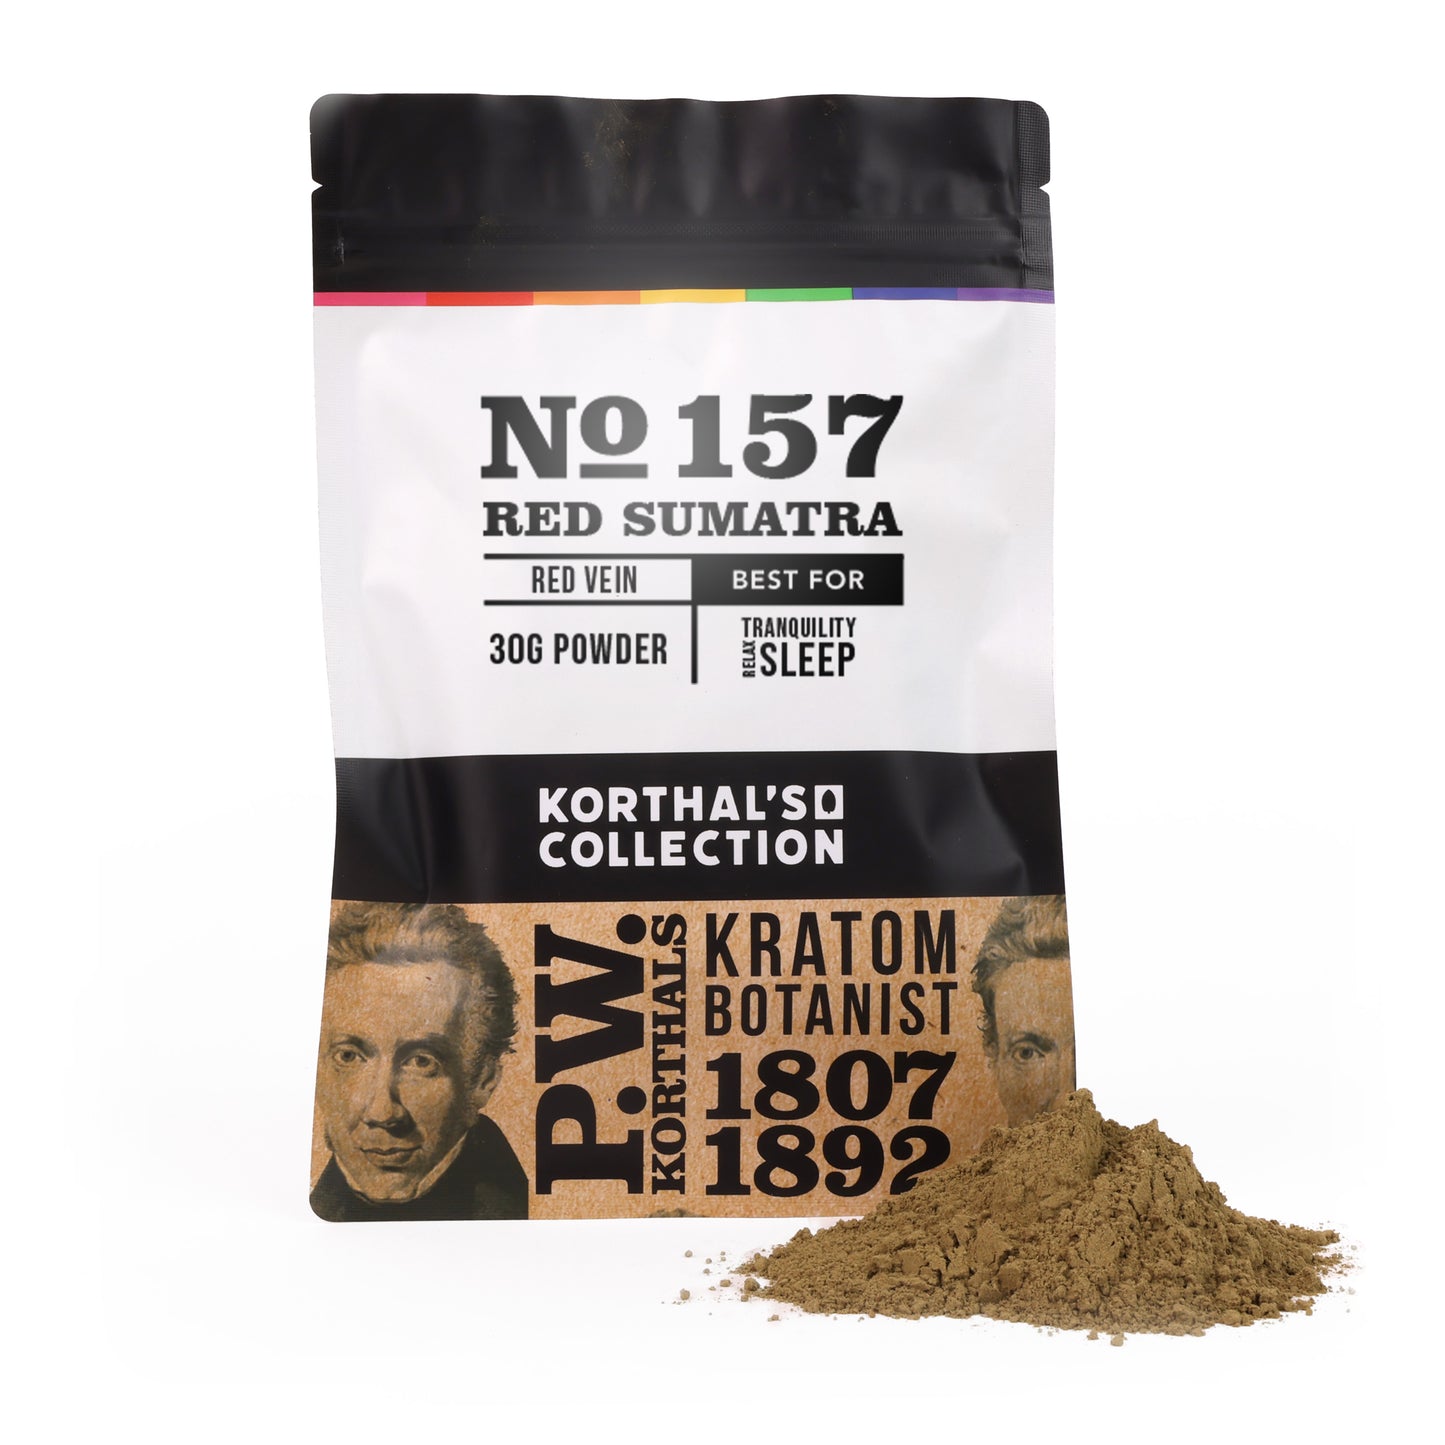 No 157 Kratom Red Sumatra Powder